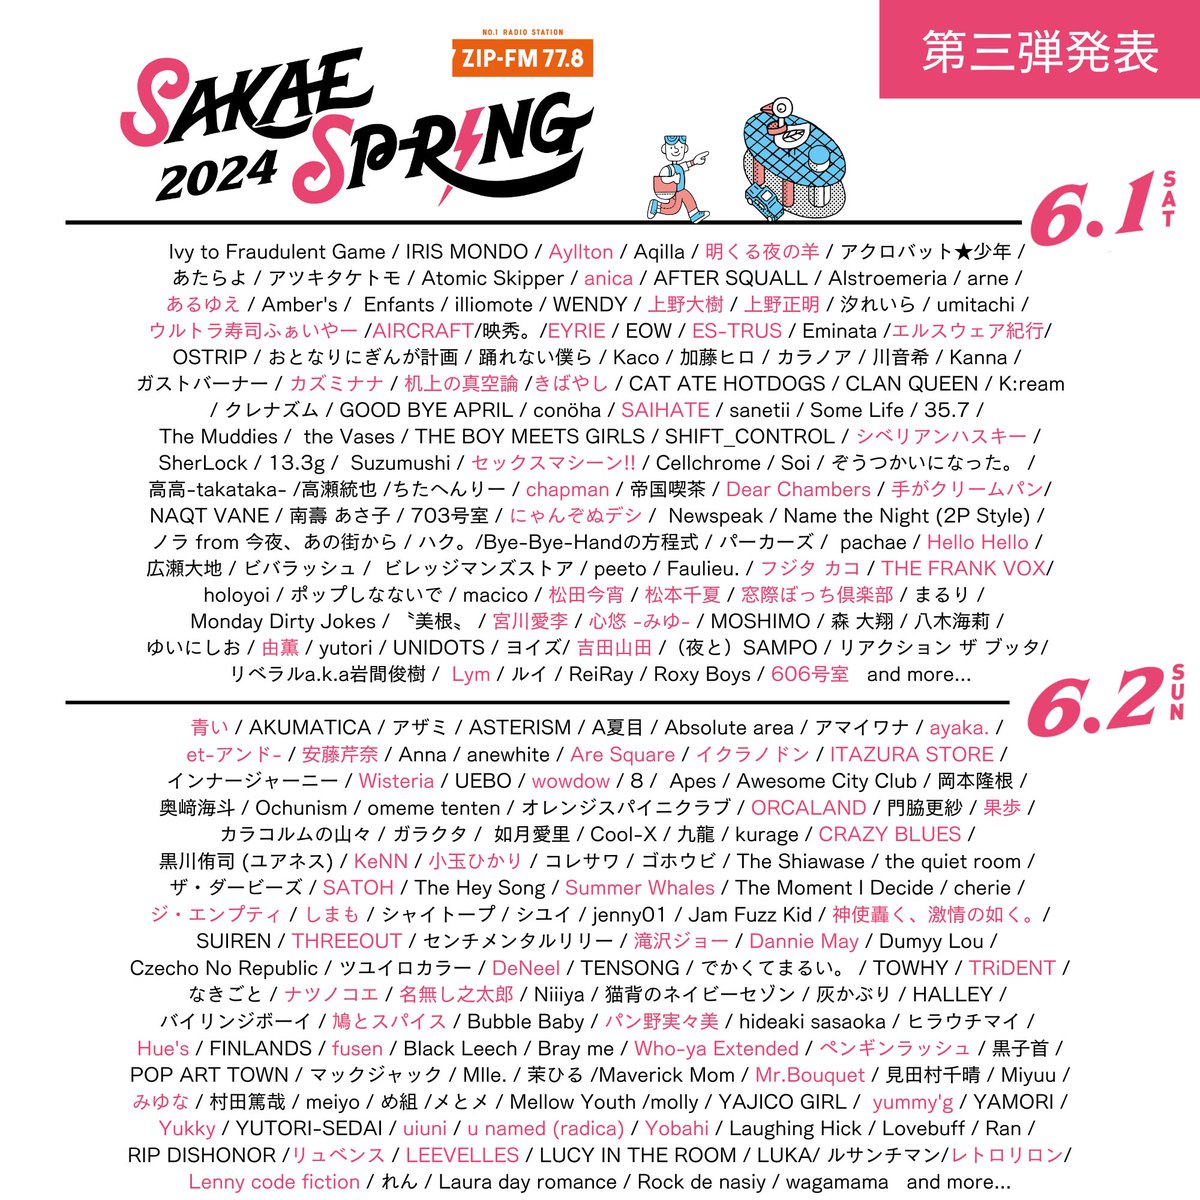 🍞初の名古屋ライブ！！🍞

名古屋・栄で開催の東海地区最大のライブサーキット
「SAKAE SP-RING 2024」への出演が決定！
パン野は6/2(日)に出演します🎤✨

🎫本日よりチケット一般発売開始！
👇詳しくは👇️
sakaespring.com

@SAKAE_SPRING
#サカスプ2024 #サカスプ